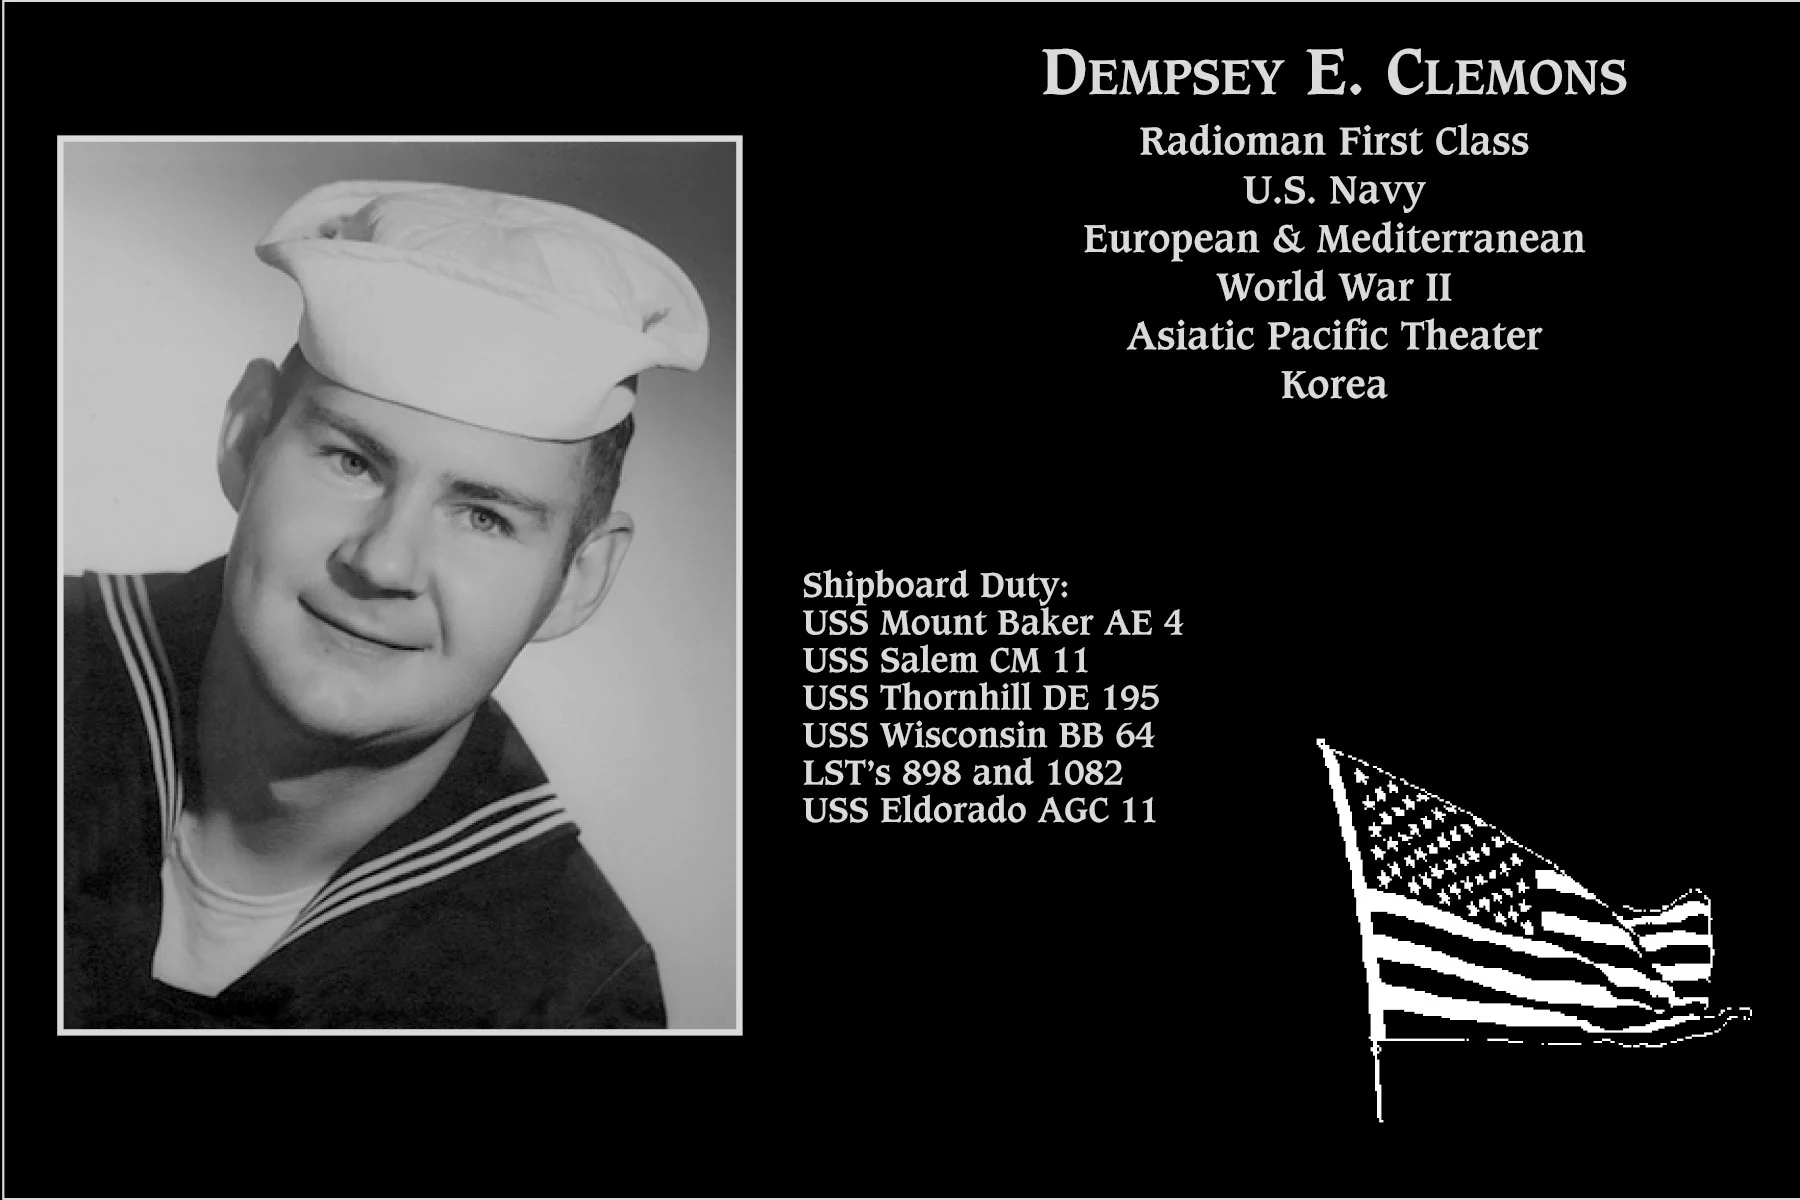 Dempsey E. Clemons